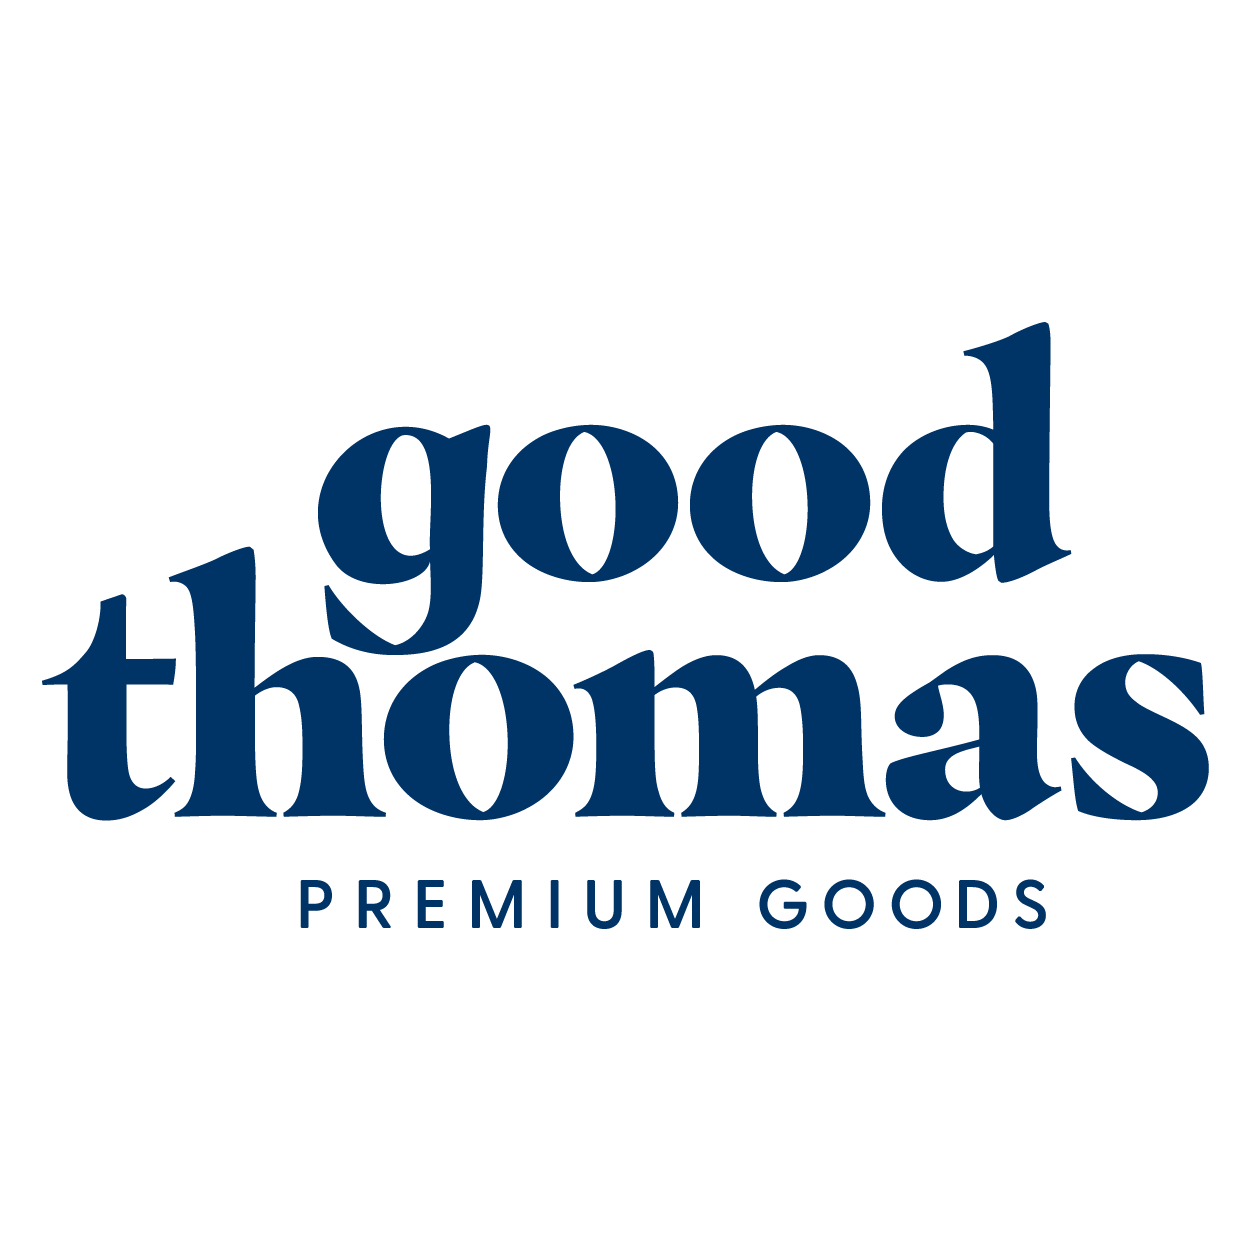 Good Thomas logo